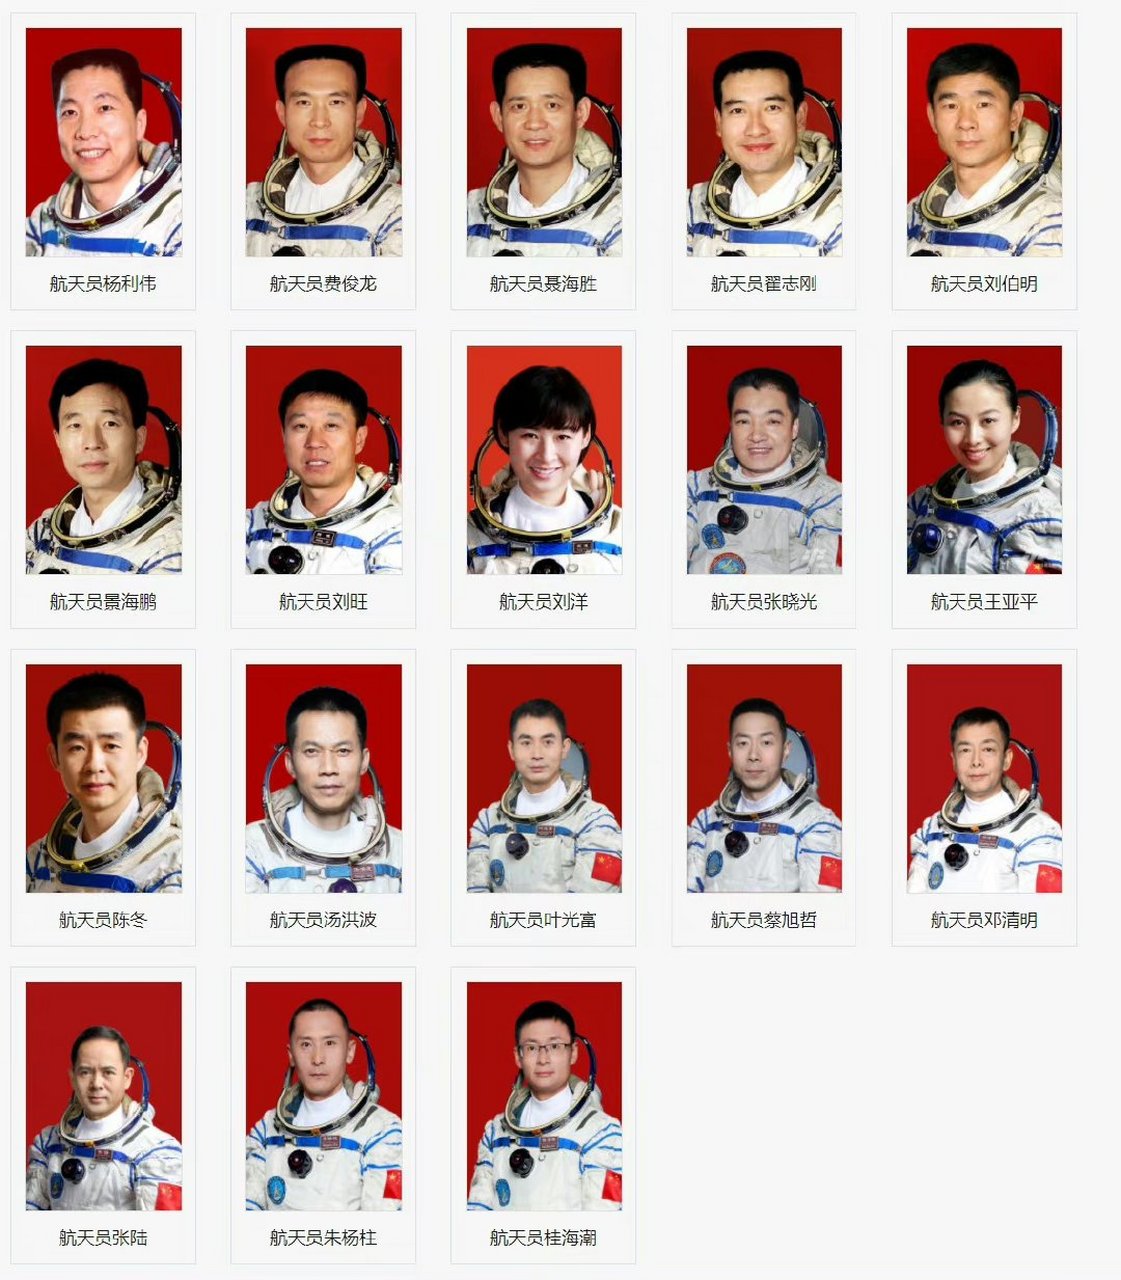 中国航天员照片和名字图片